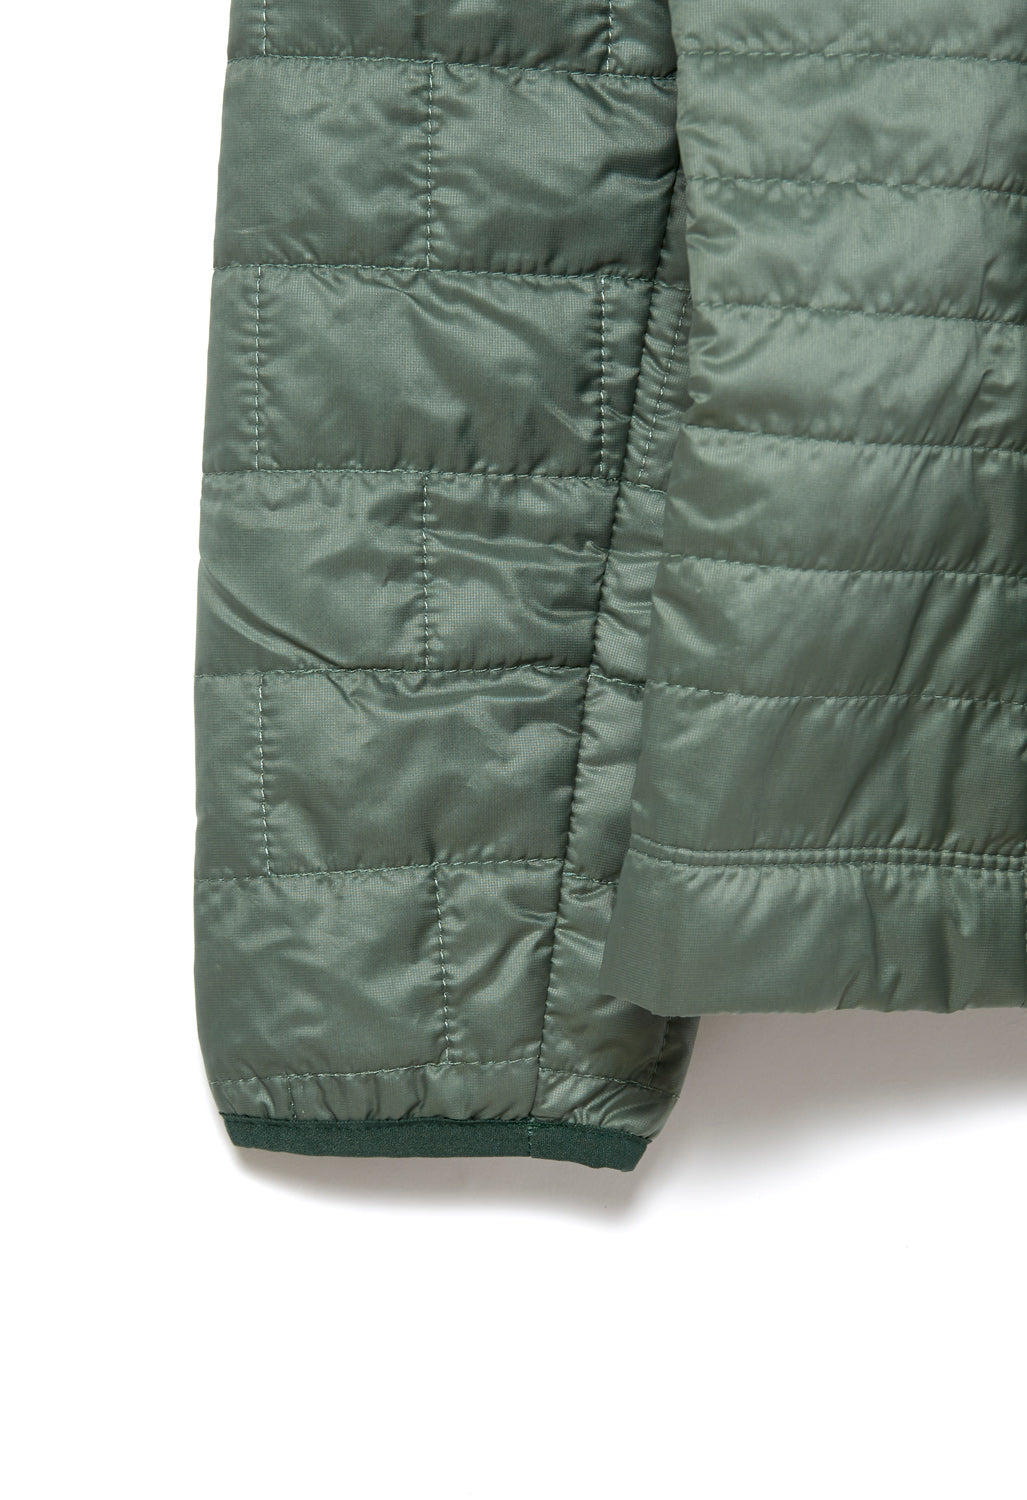 Patagonia Nano Puff Women's Insulated Jacket - Hemlock Green